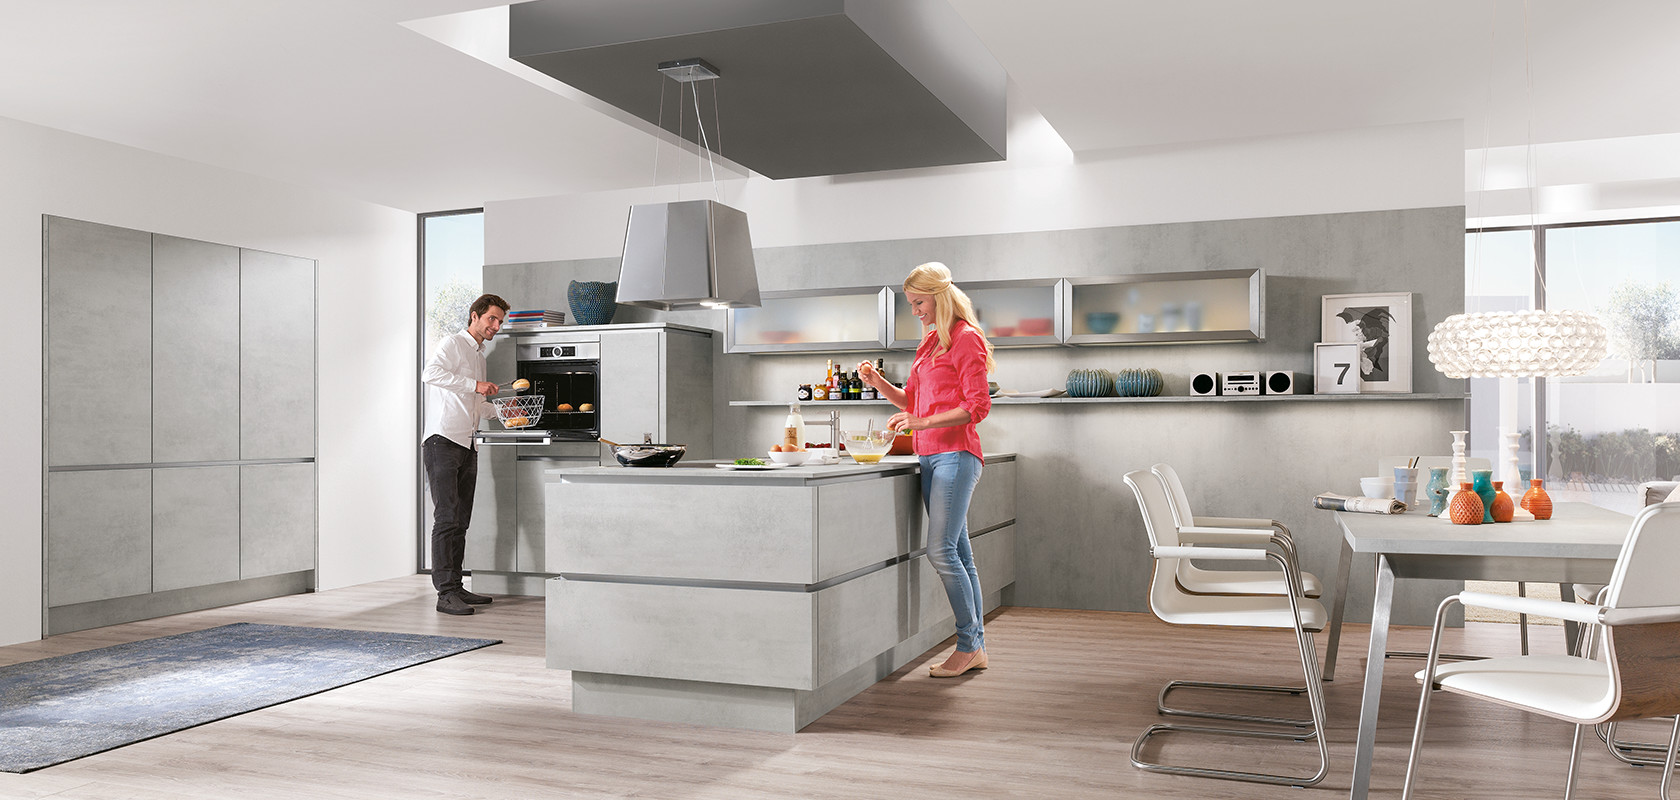 Un design de cuisine moderne avec deux personnes cuisinant, mettant en vedette des armoires élégantes, des appareils en acier inoxydable et un agencement lumineux et spacieux.